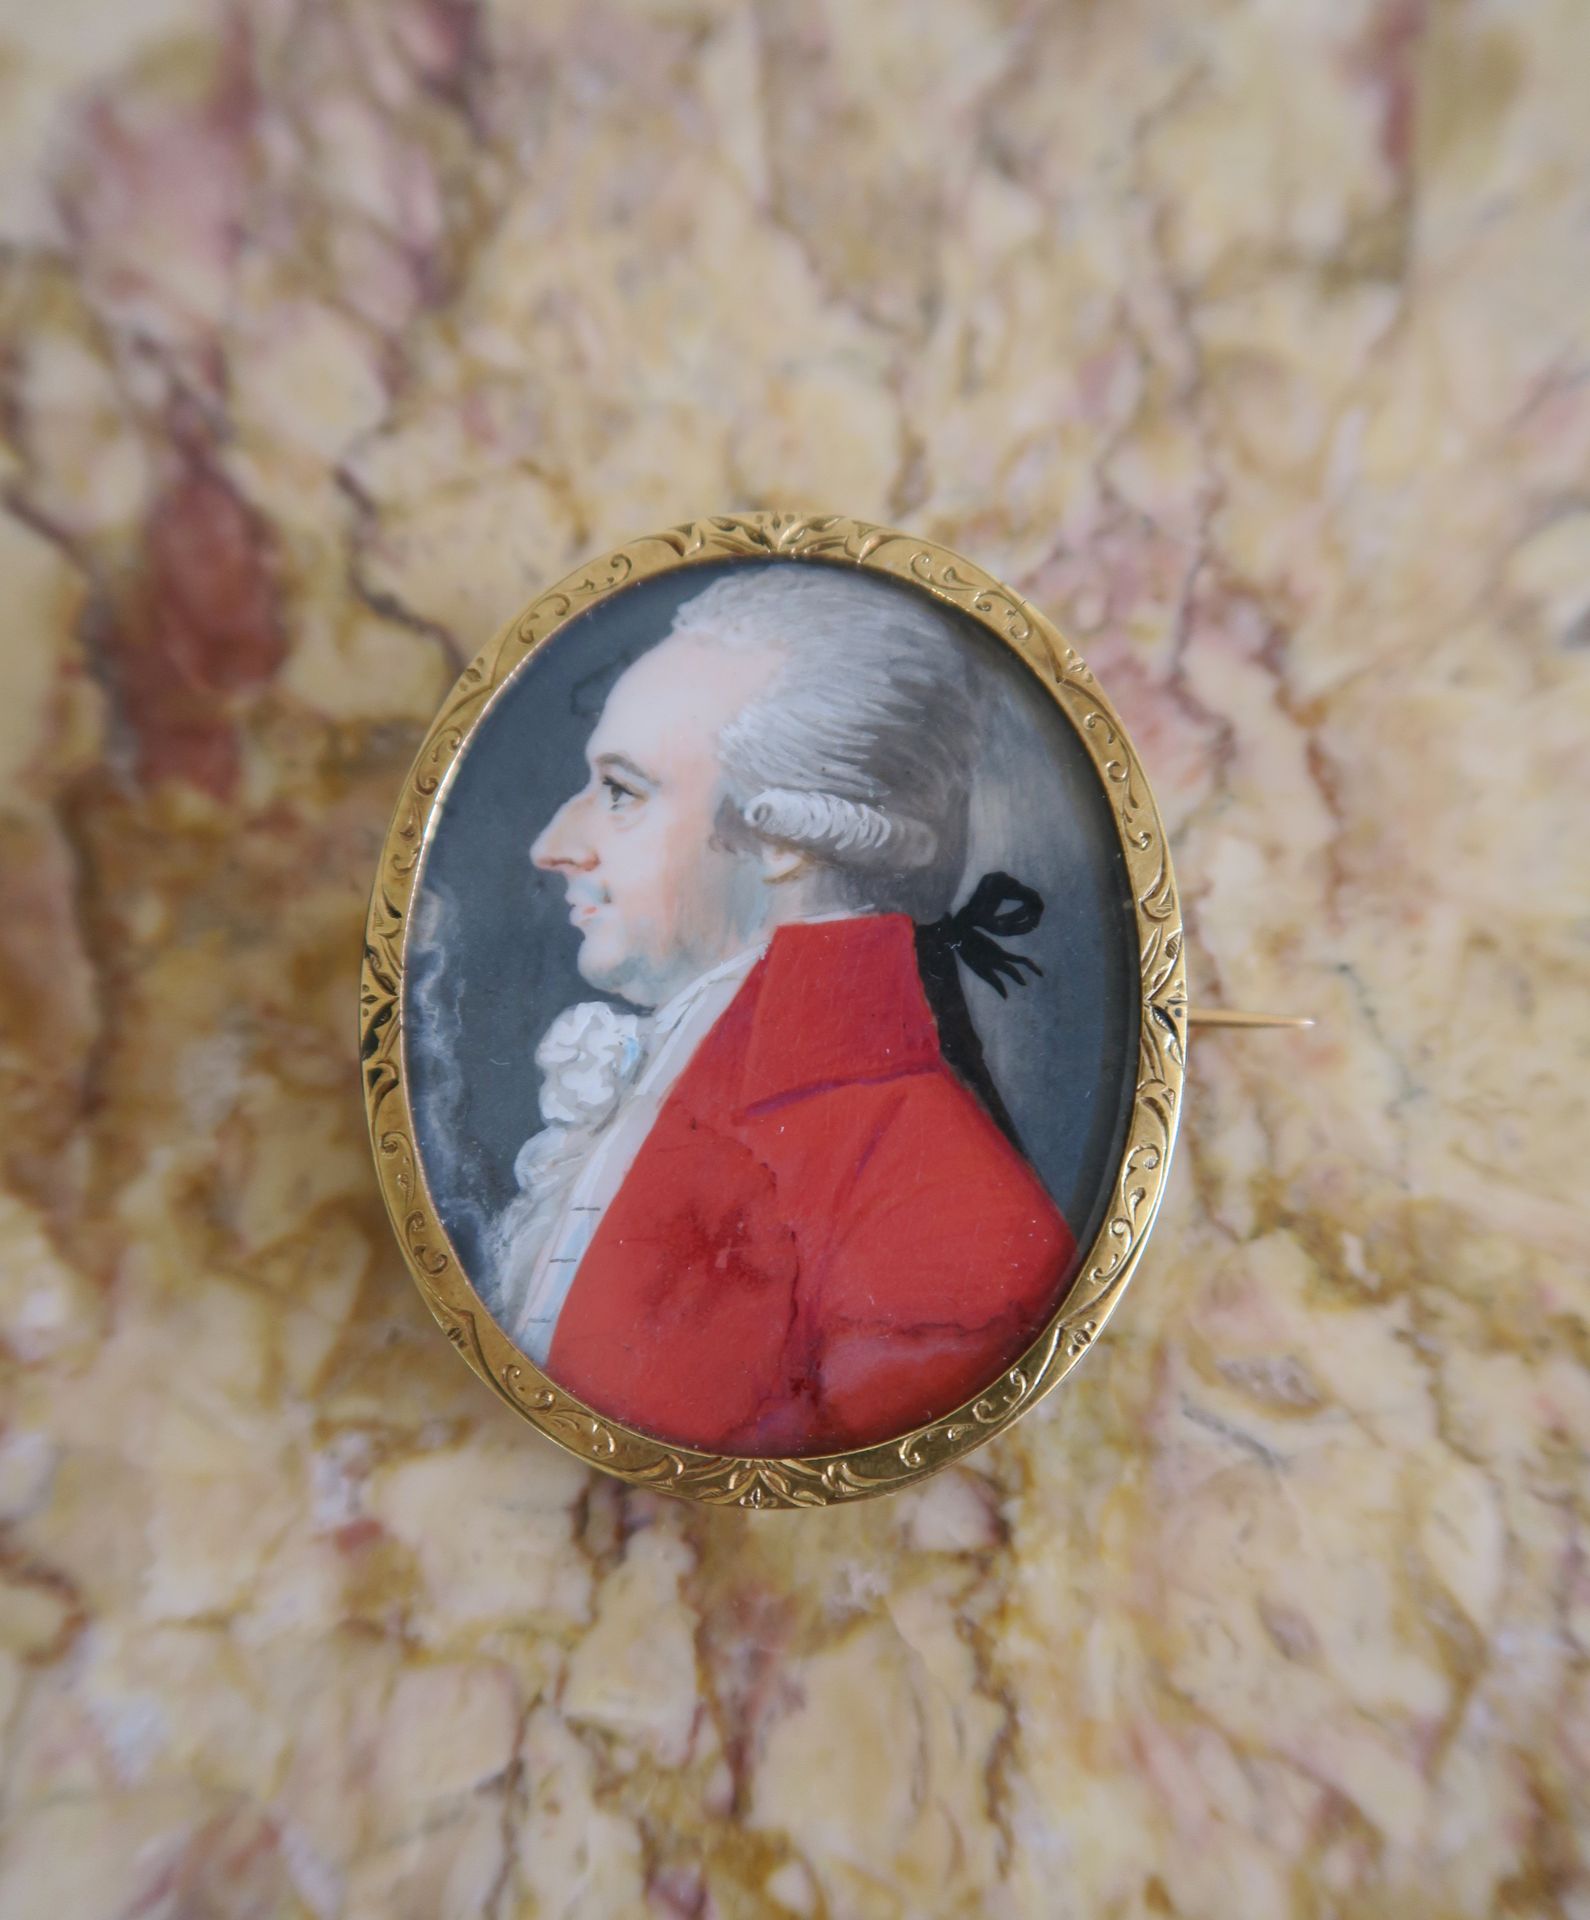 Null 一枚18K黄金椭圆形胸针，上面有一个18世纪末的男子侧面肖像，有珍珠母背景

PB。11 g.高4,5厘米